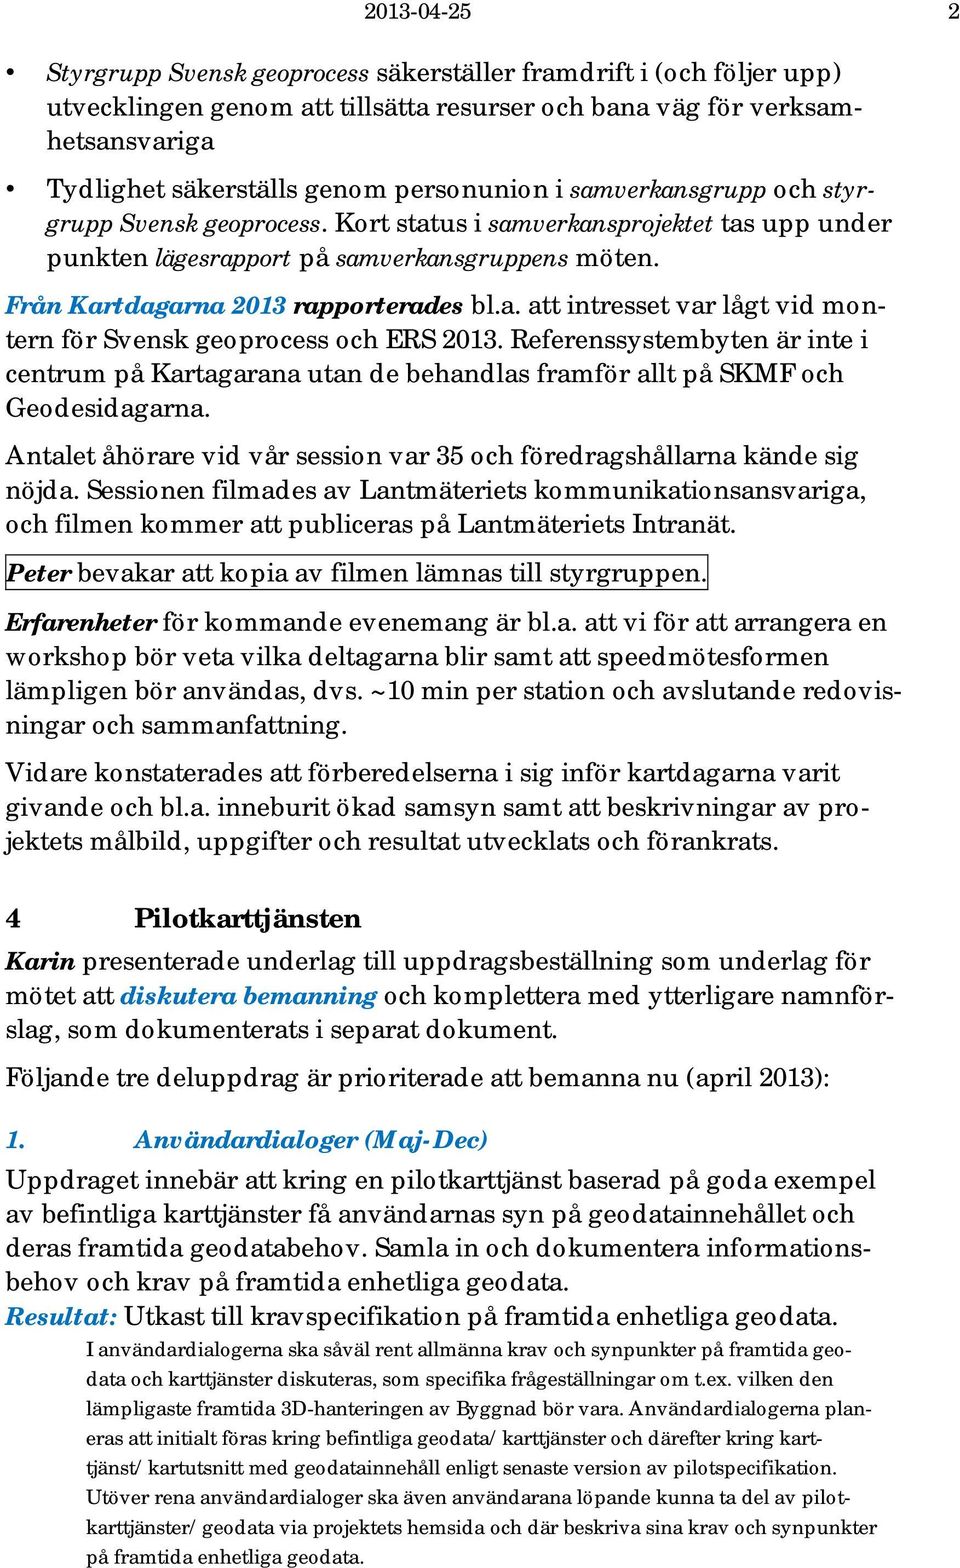 a. att intresset var lågt vid montern för Svensk geoprocess och ERS 2013. Referenssystembyten är inte i centrum på Kartagarana utan de behandlas framför allt på SKMF och Geodesidagarna.